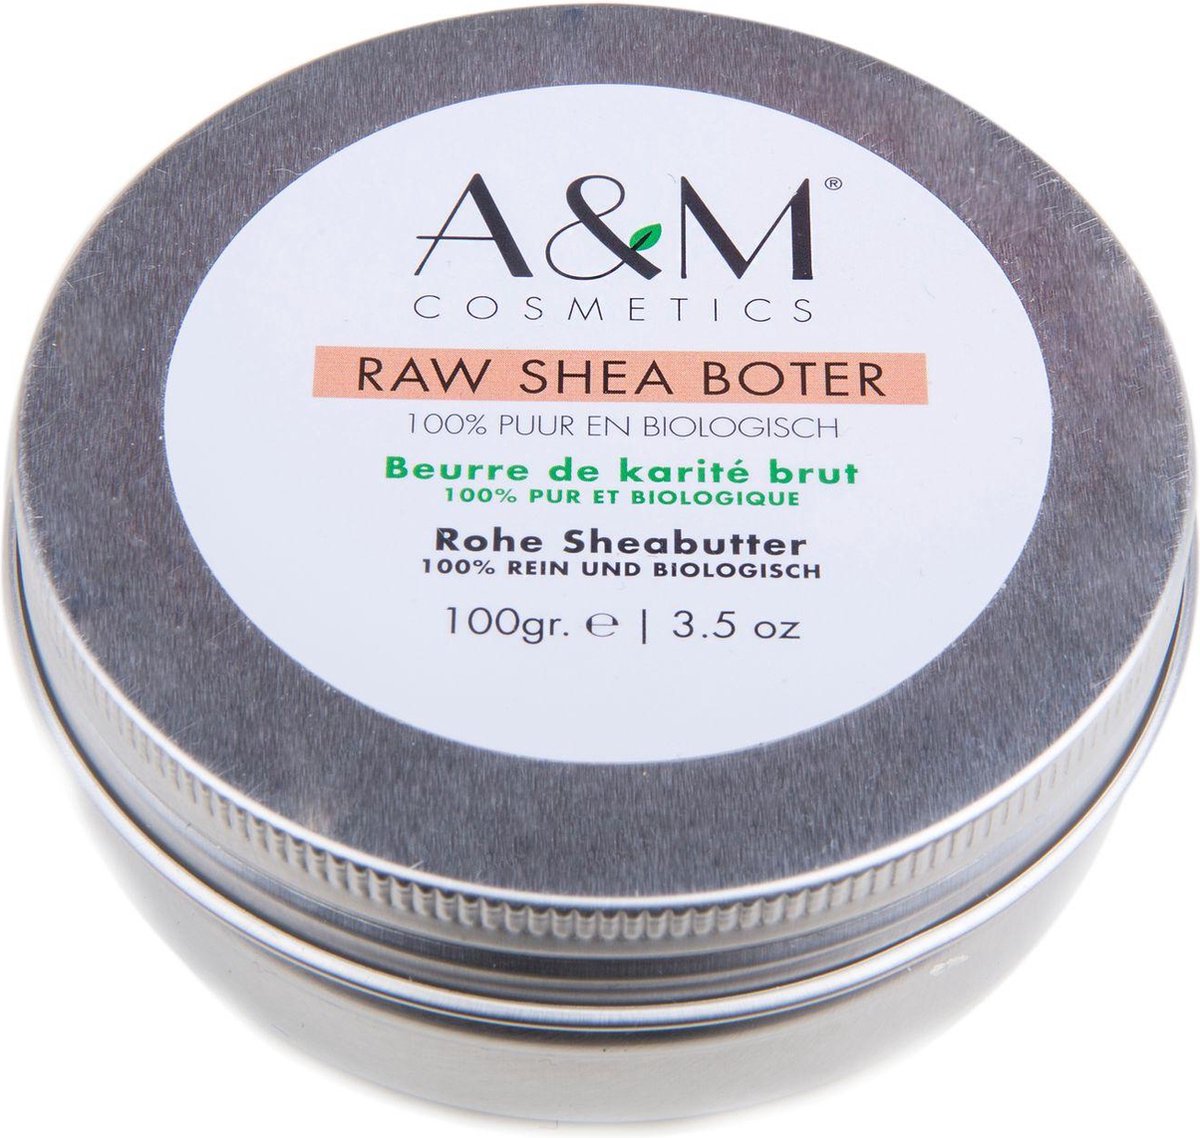 Aza Natural - Raw Shea boter - sheabutter (hoogwaardigkwaliteit puur & biologisch) - 100 gram